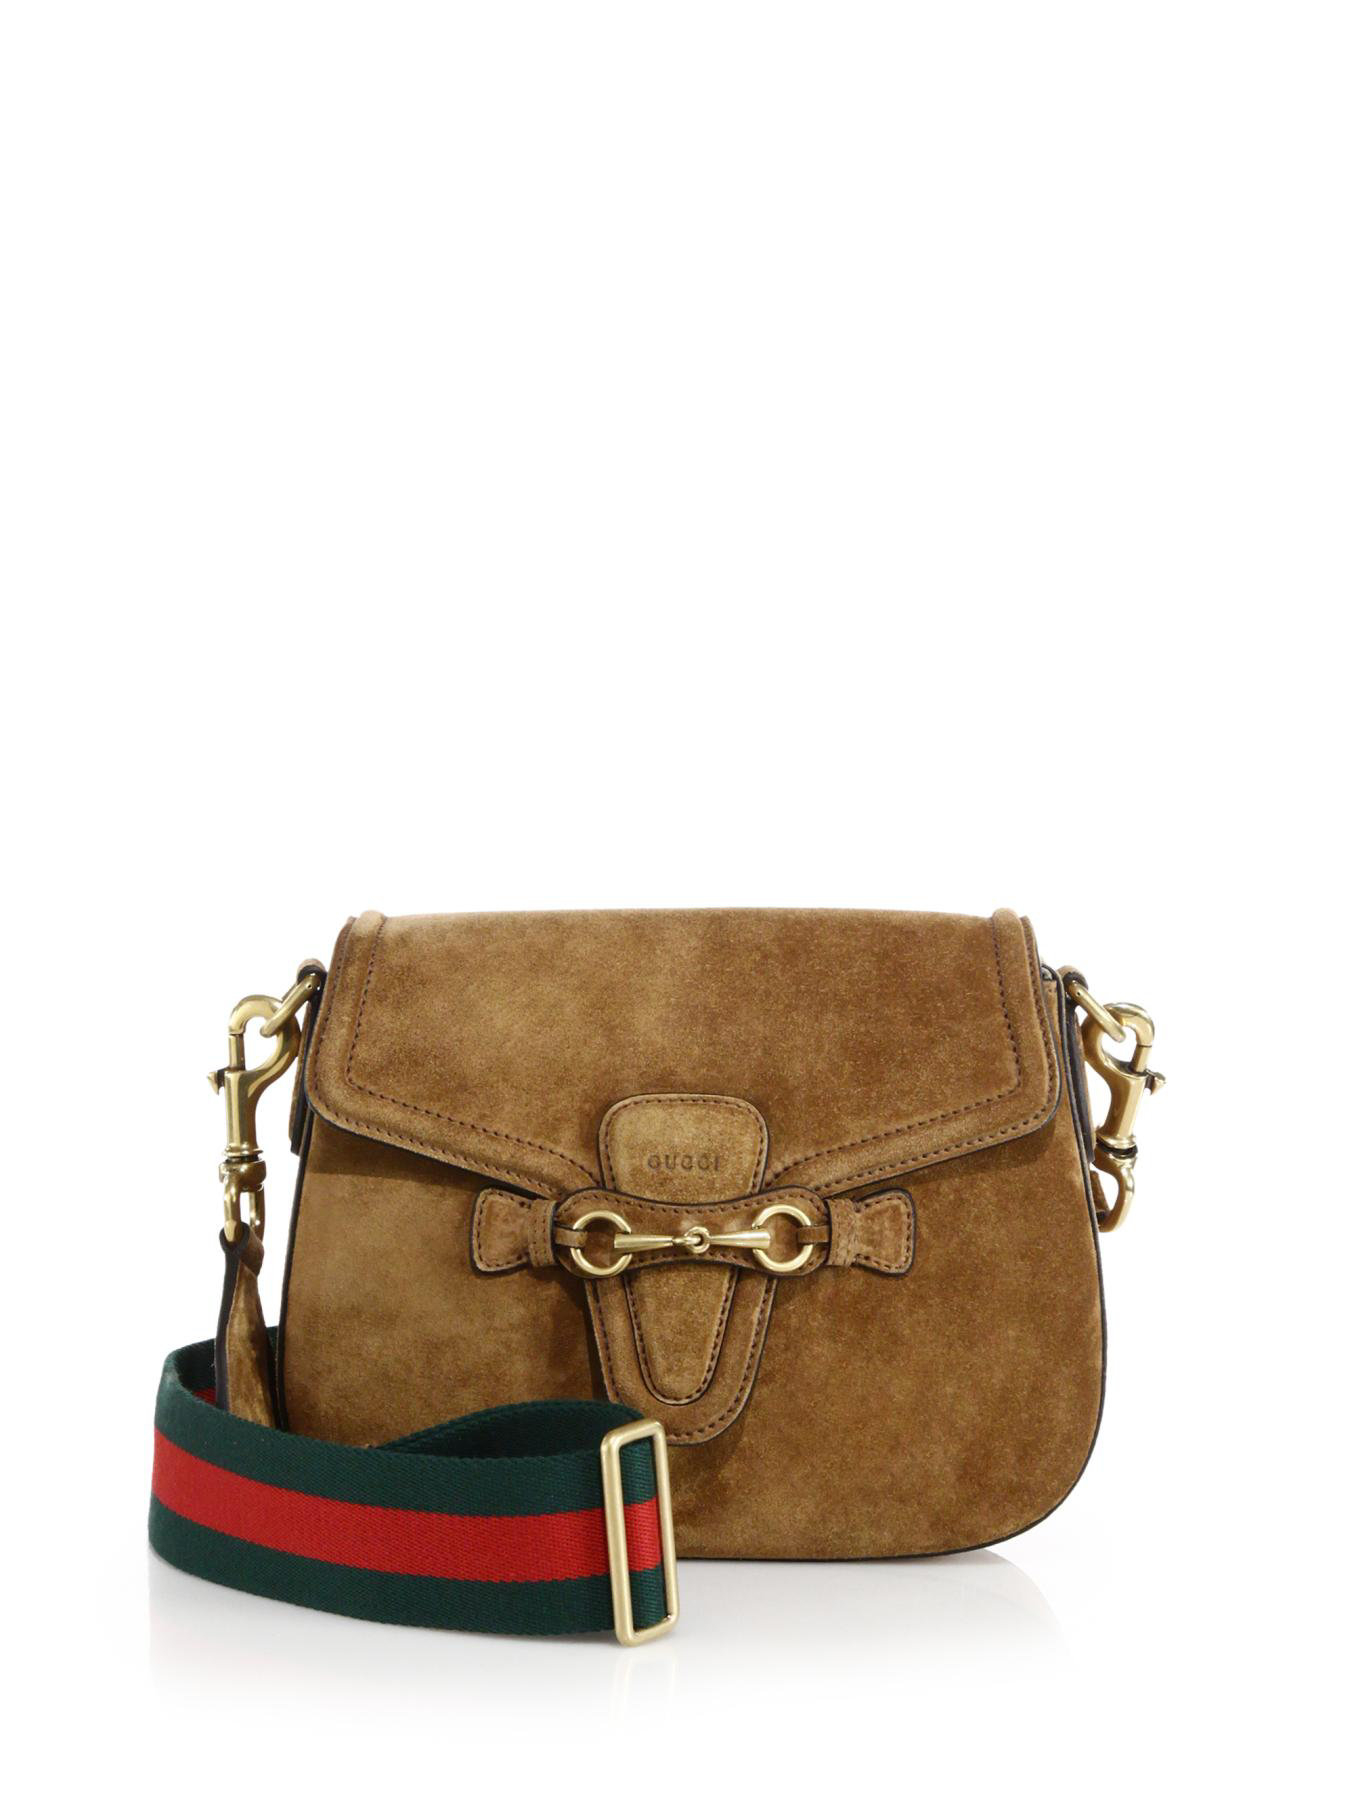 Gucci Brown Suede Shoulder Bag | NAR Media Kit